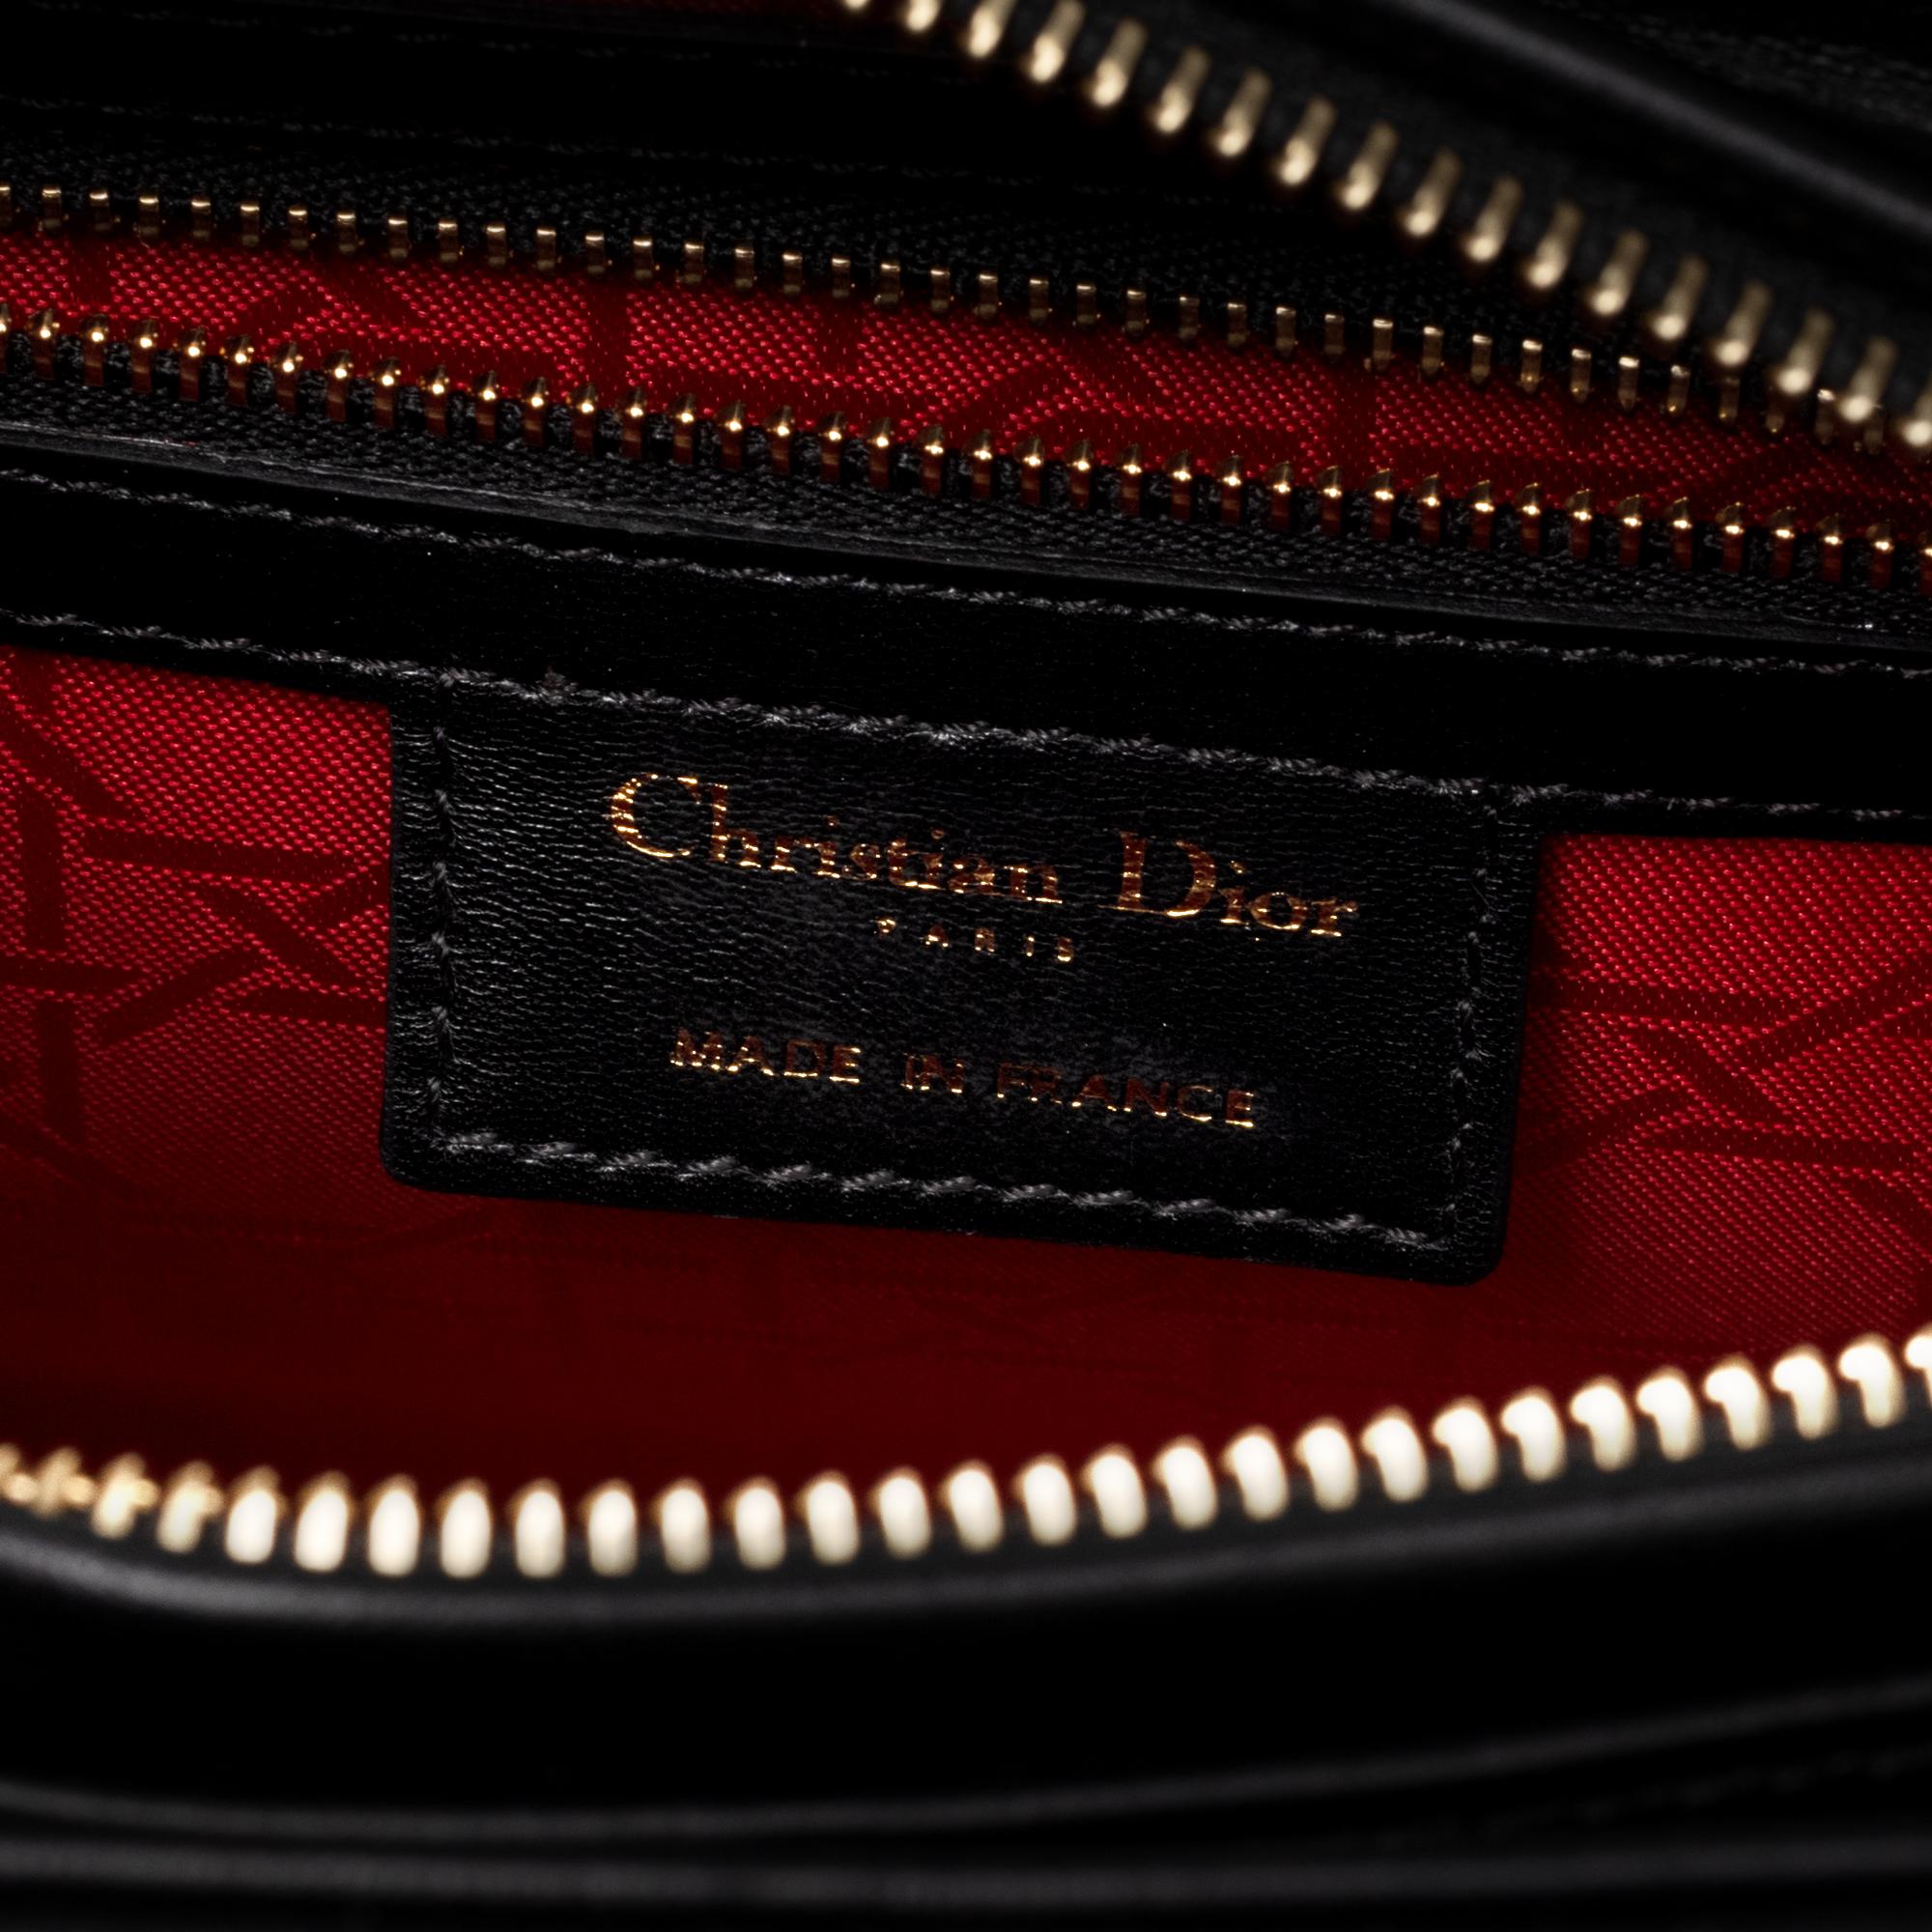  Christian Dior Lady Dior MM (Medium size) handbag in black cannage leather, GHW 3